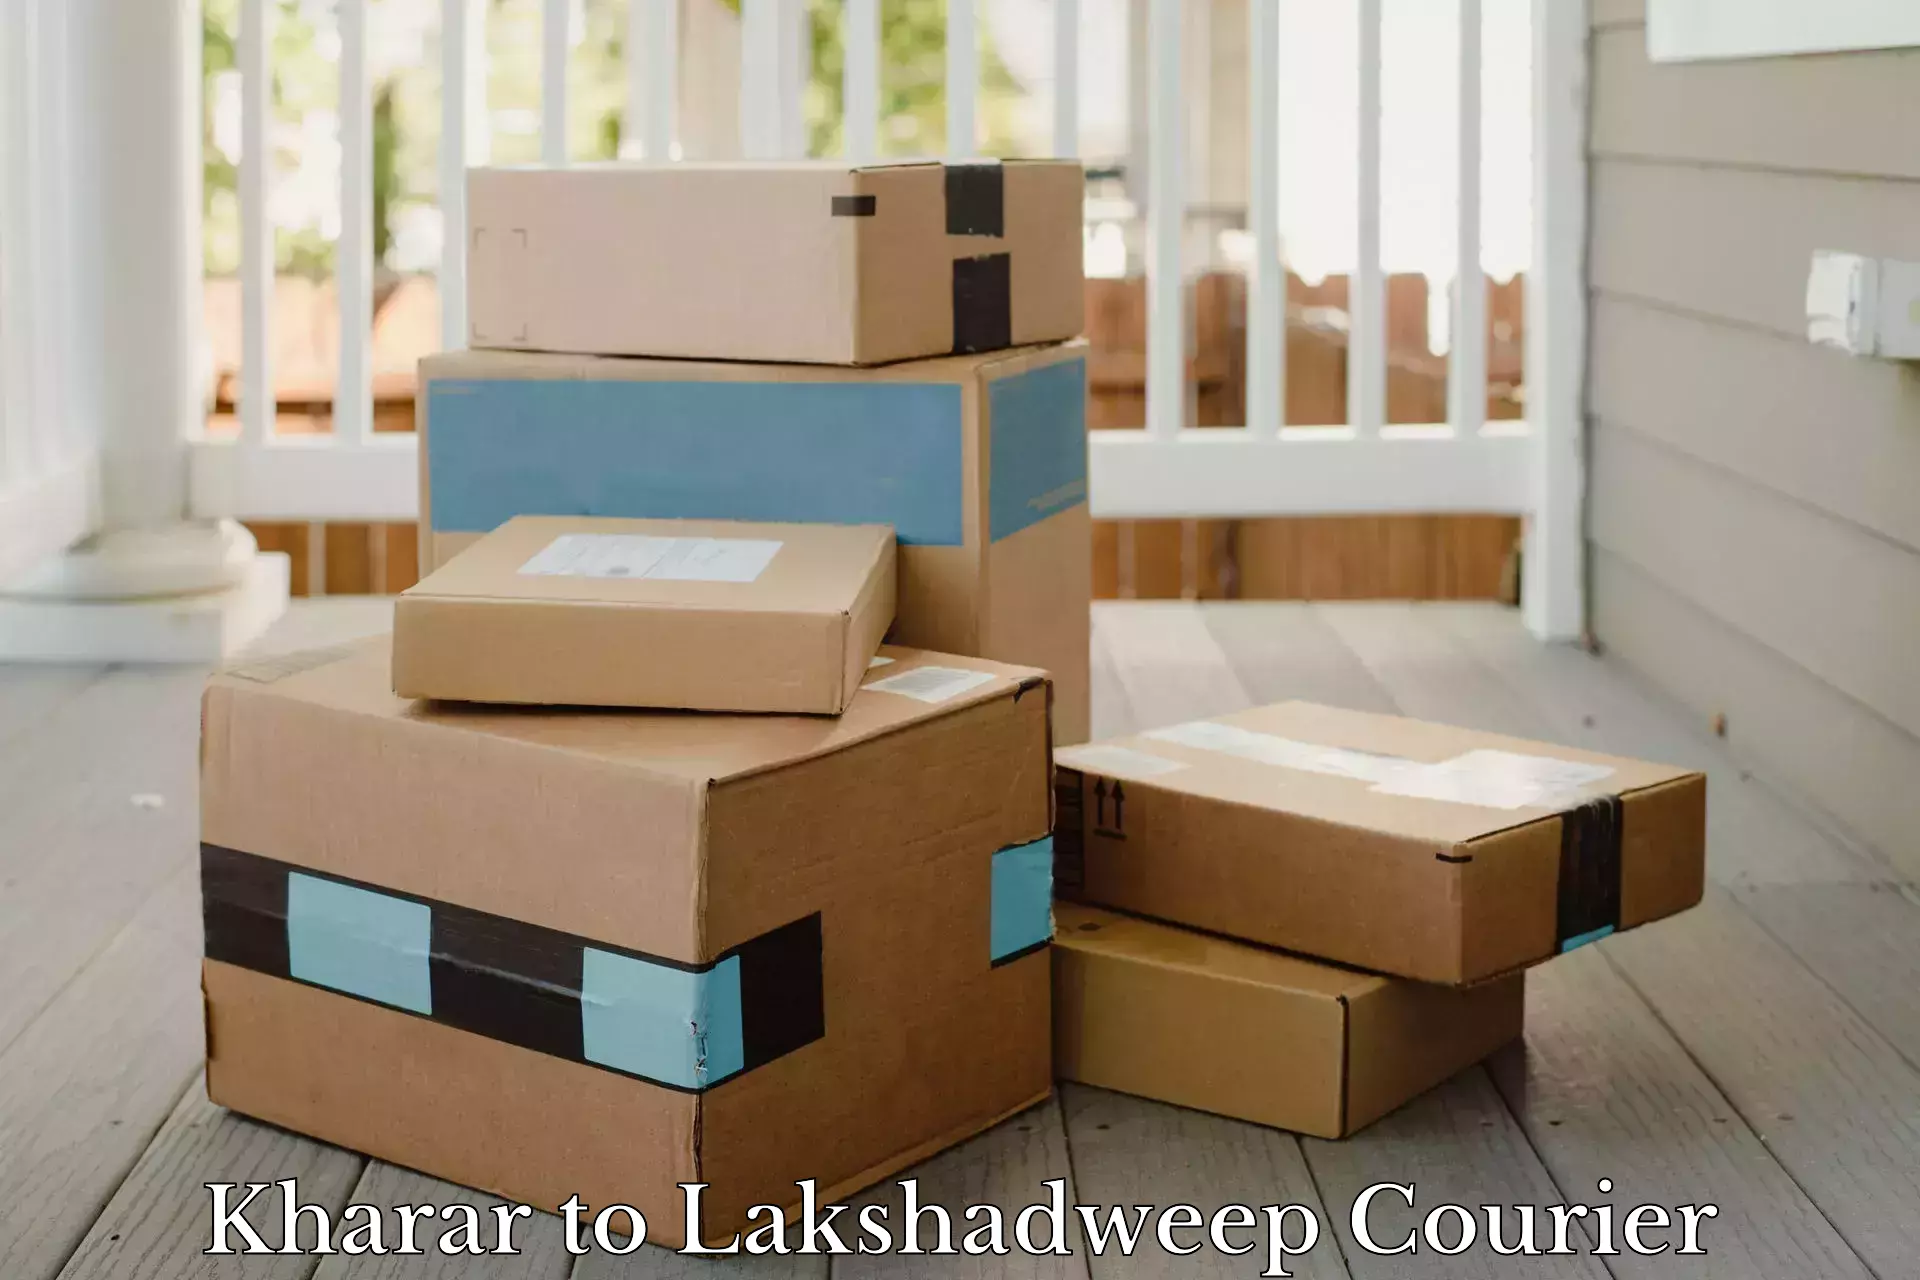 High-capacity shipping options Kharar to Lakshadweep